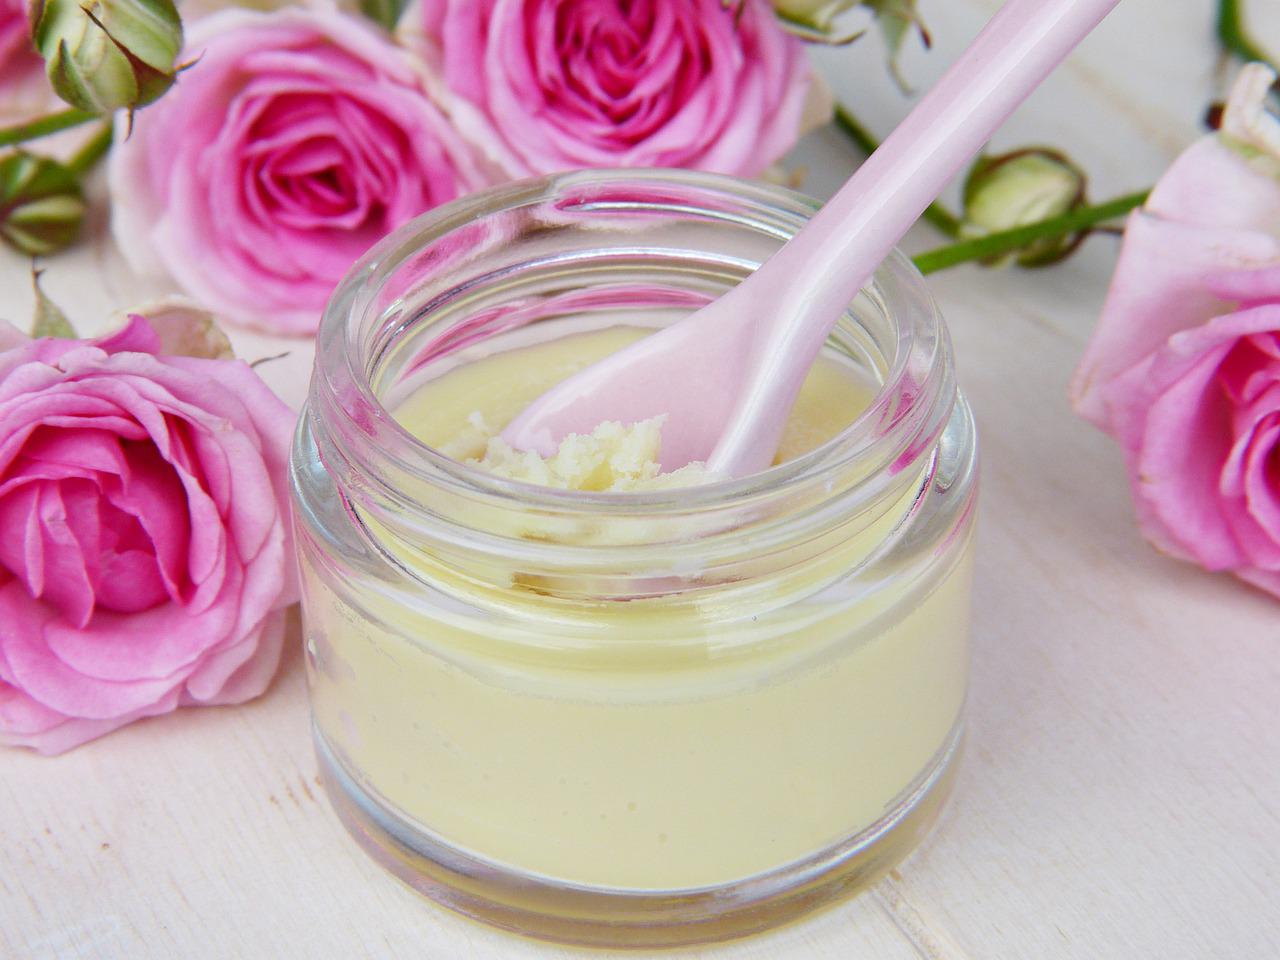 Top kosmetyki – 5 najlepszych porad dotyczących pielęgnacji skóry dla wszystkich typów skóry